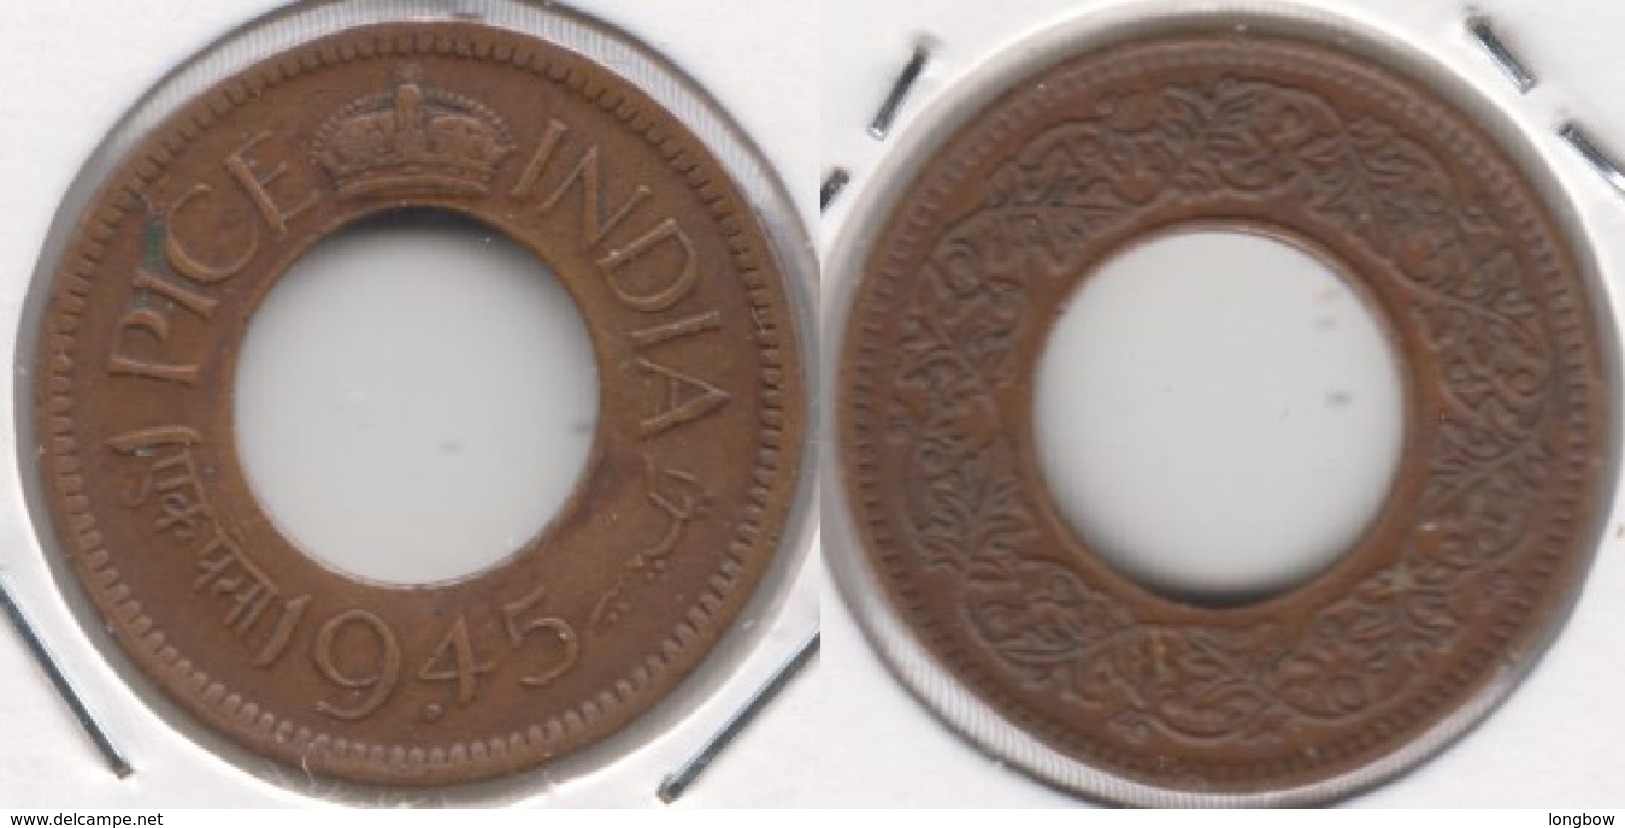 India Britannica 1 Pice 1945 (Large Legend) KM#533 - Used - India